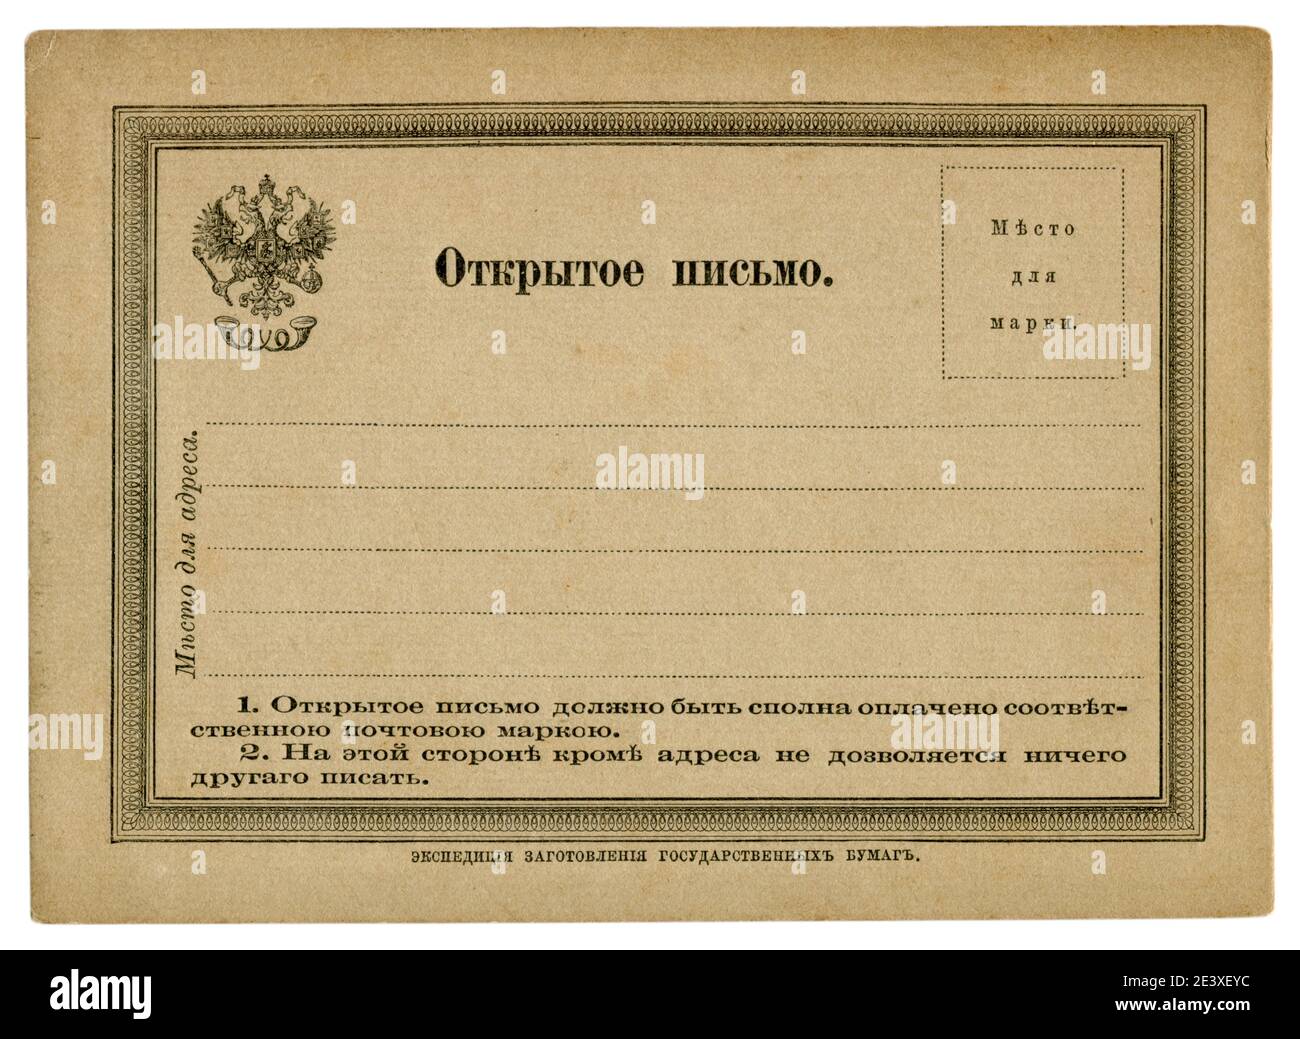 Carta stazionaria storica russa inutilizzata con aquila a doppia testa, con spazio per un francobollo, Impero russo, il primo numero, 1872 Foto Stock